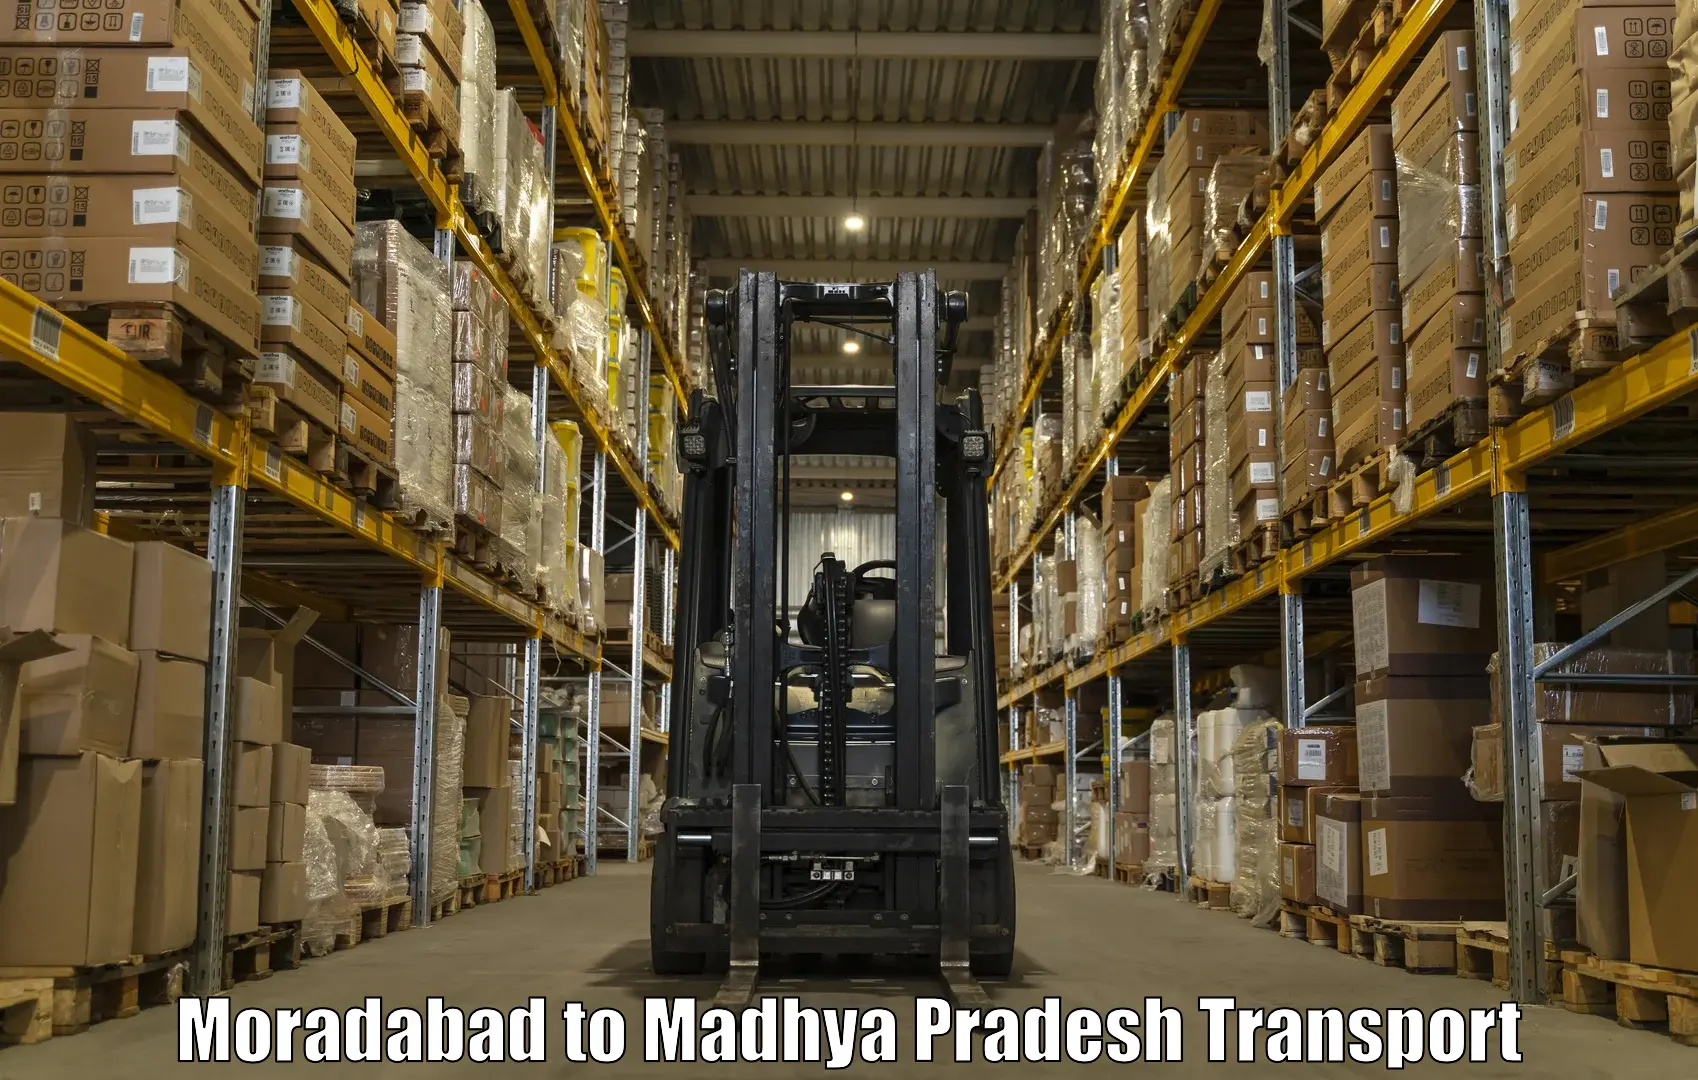 Pick up transport service Moradabad to Ghugri